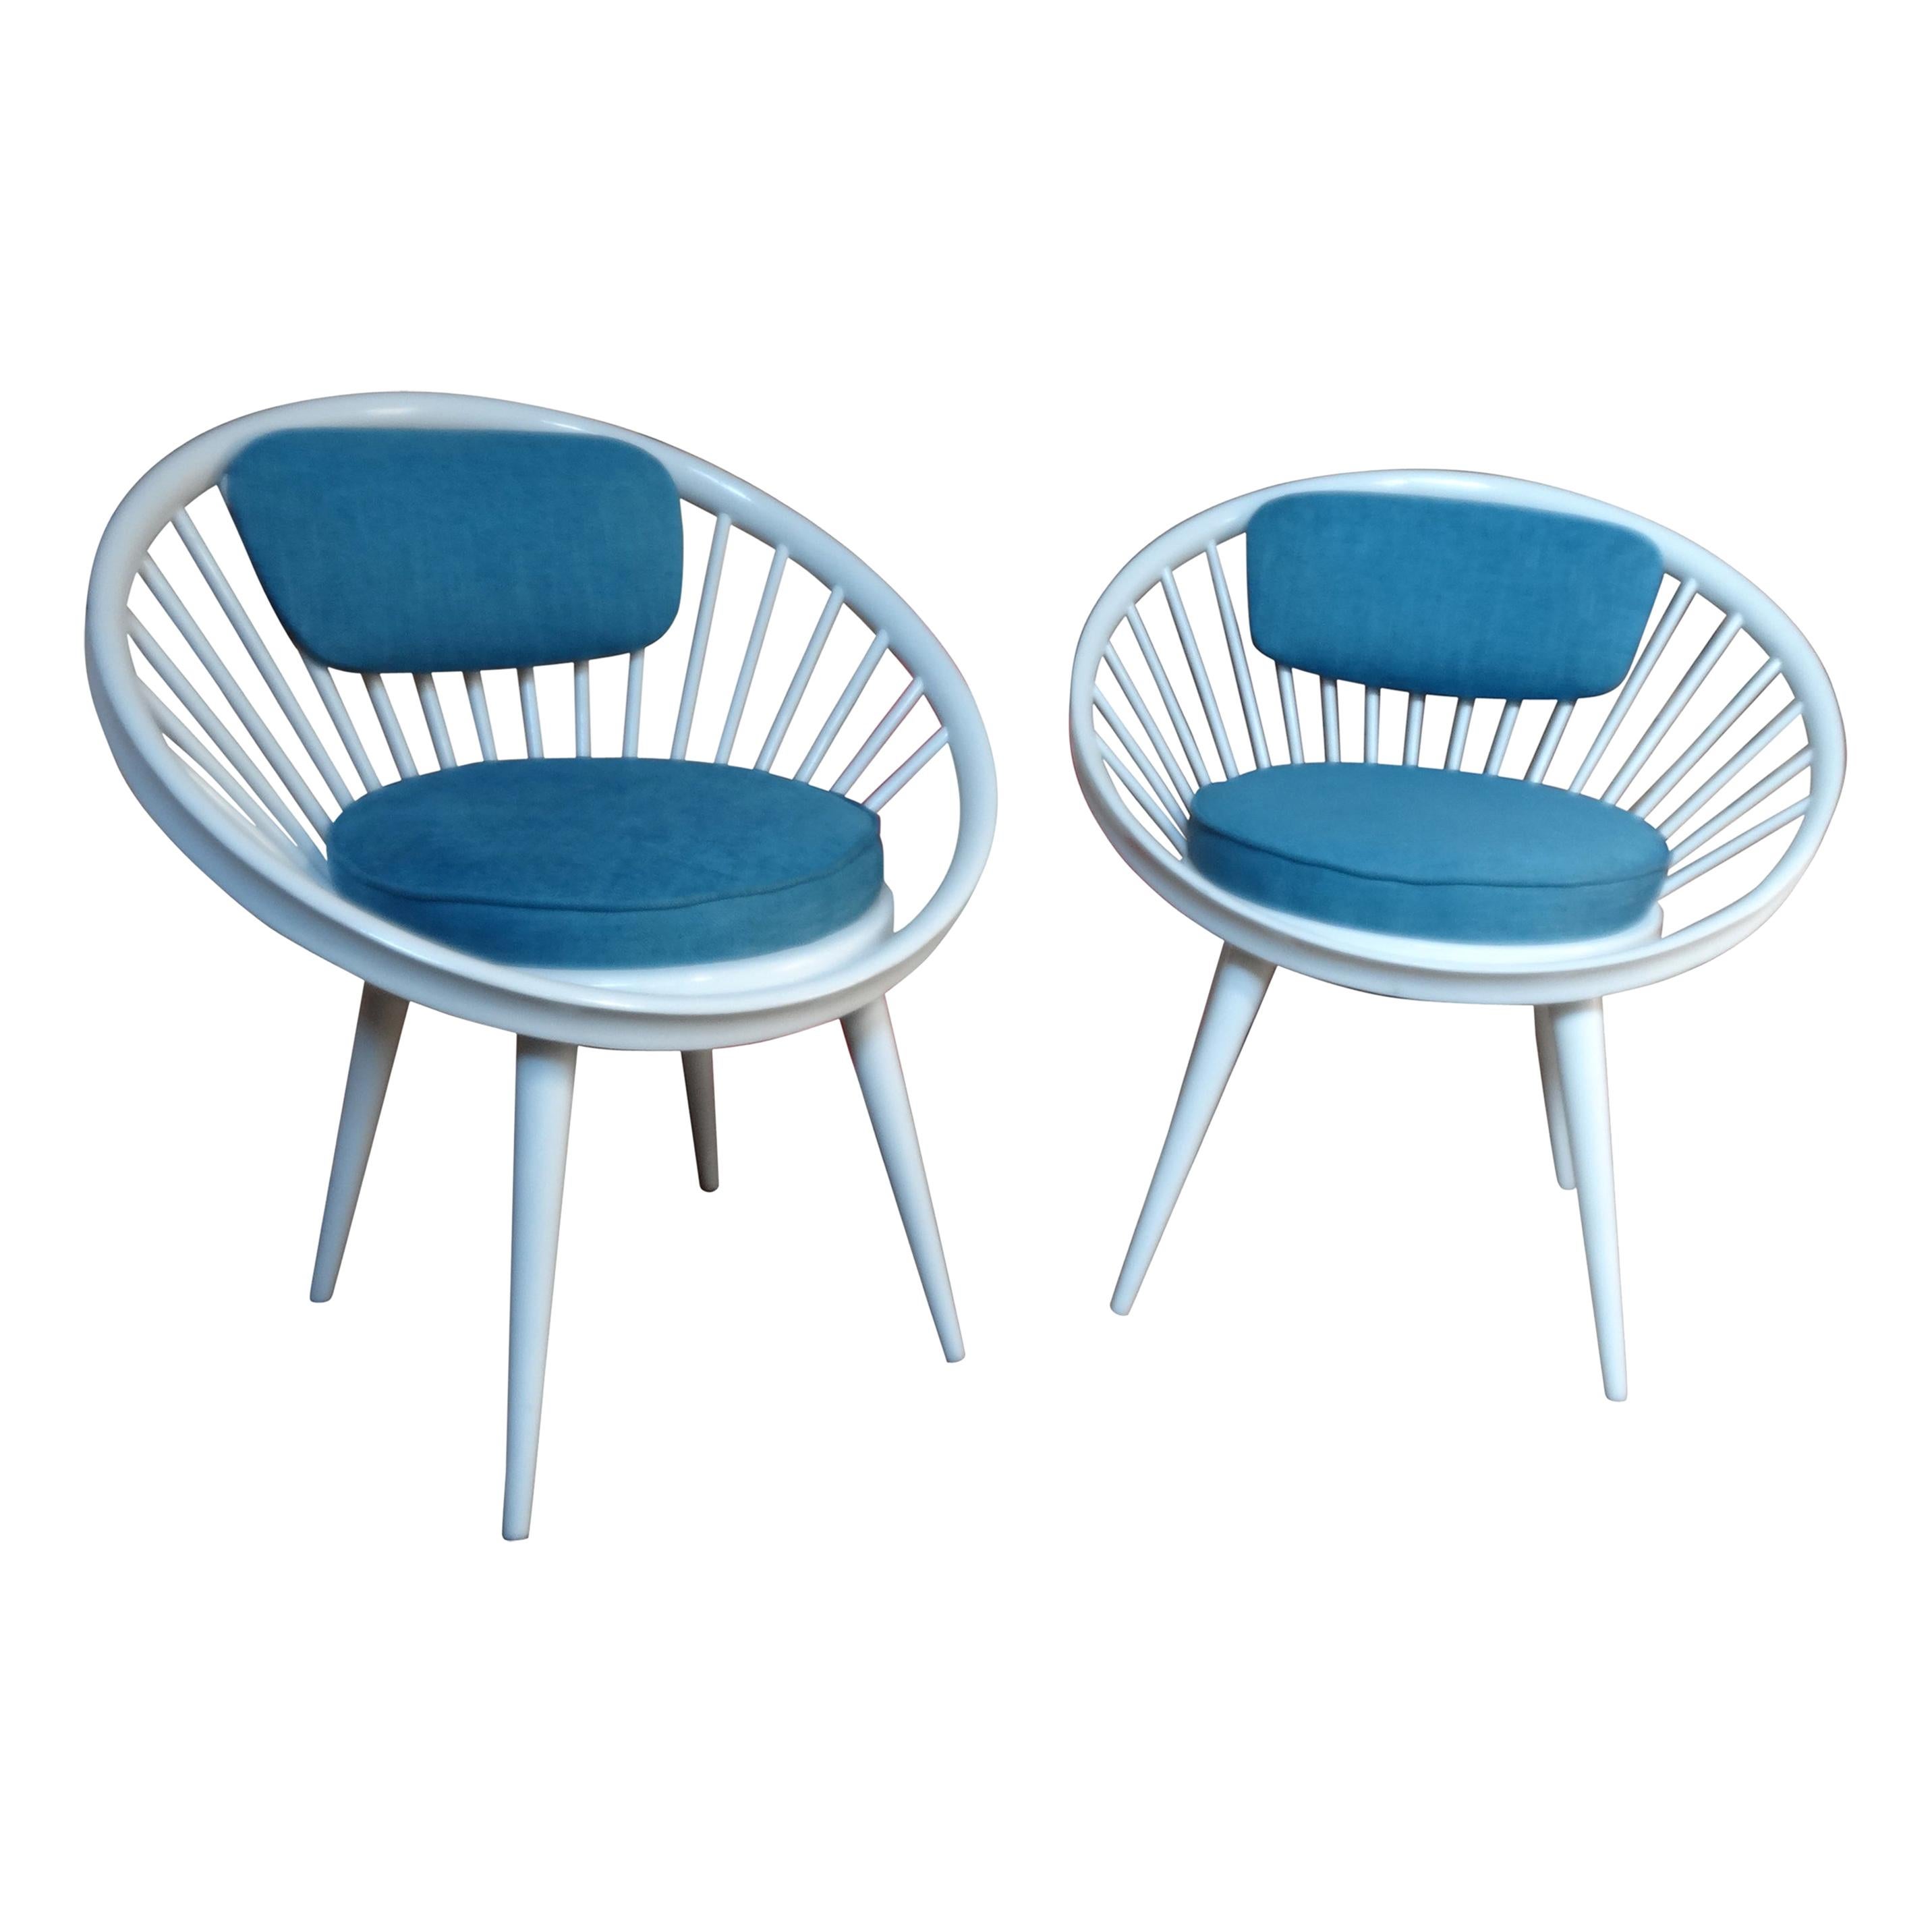 20 CENTURY DESIGN/One Retro 1960s Circle Chairs 20ème siècle Yngve Ekström a conçu pour Swedese